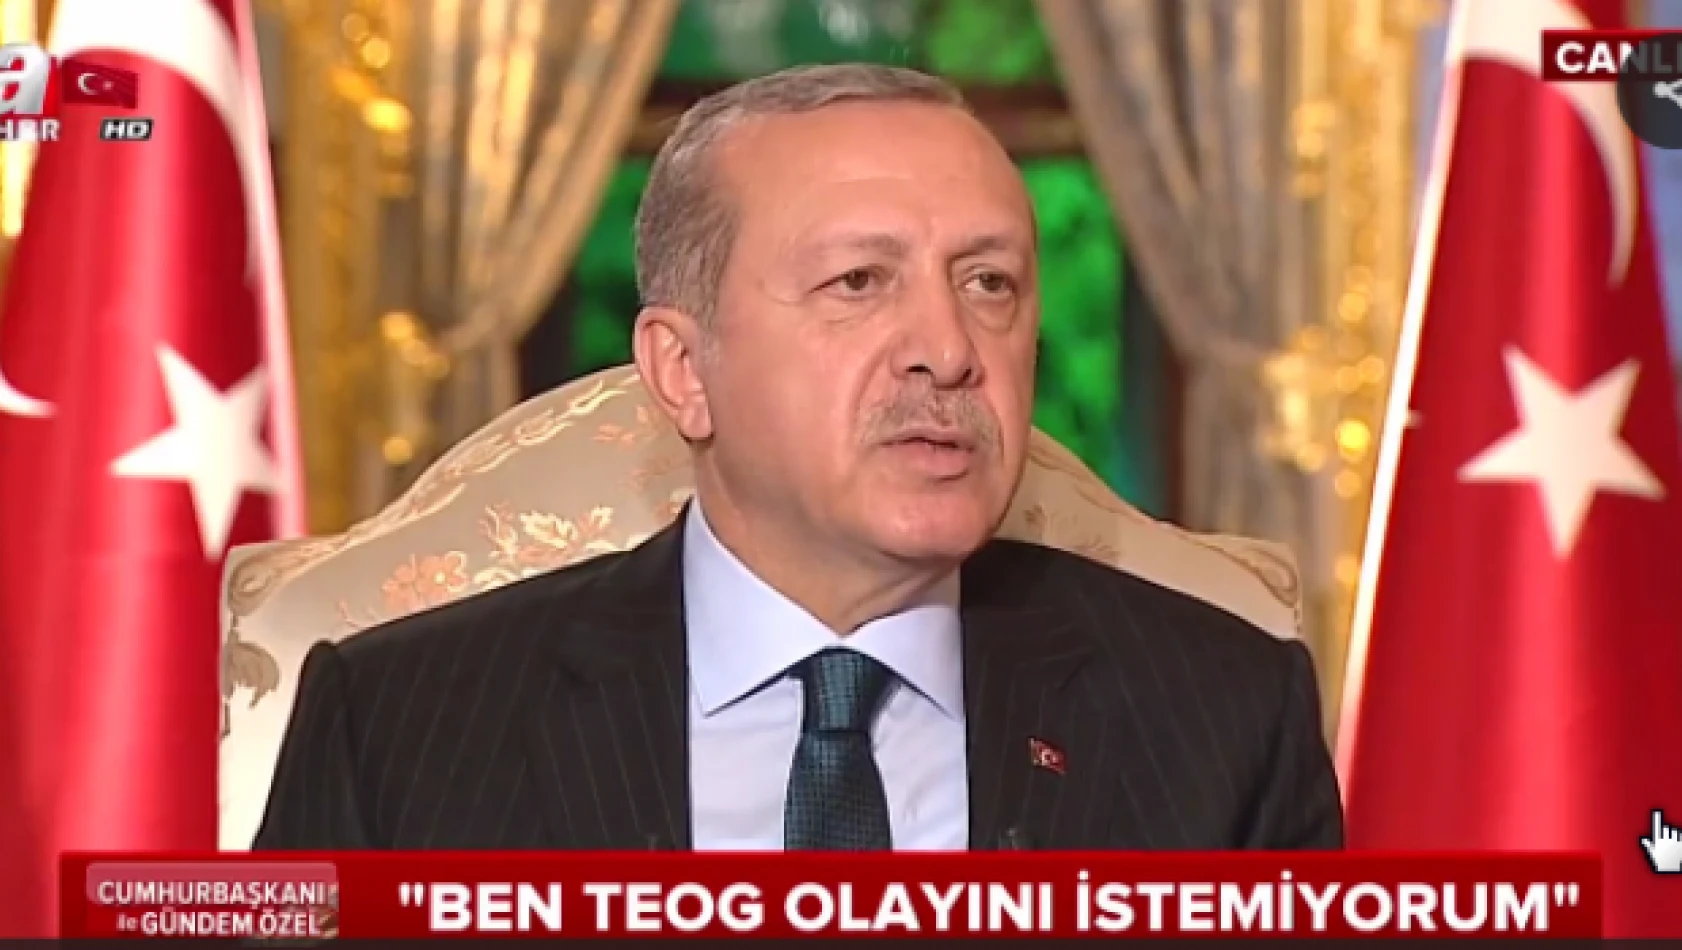 Erdoğan, &quotTEOG olayını istemiyorum."